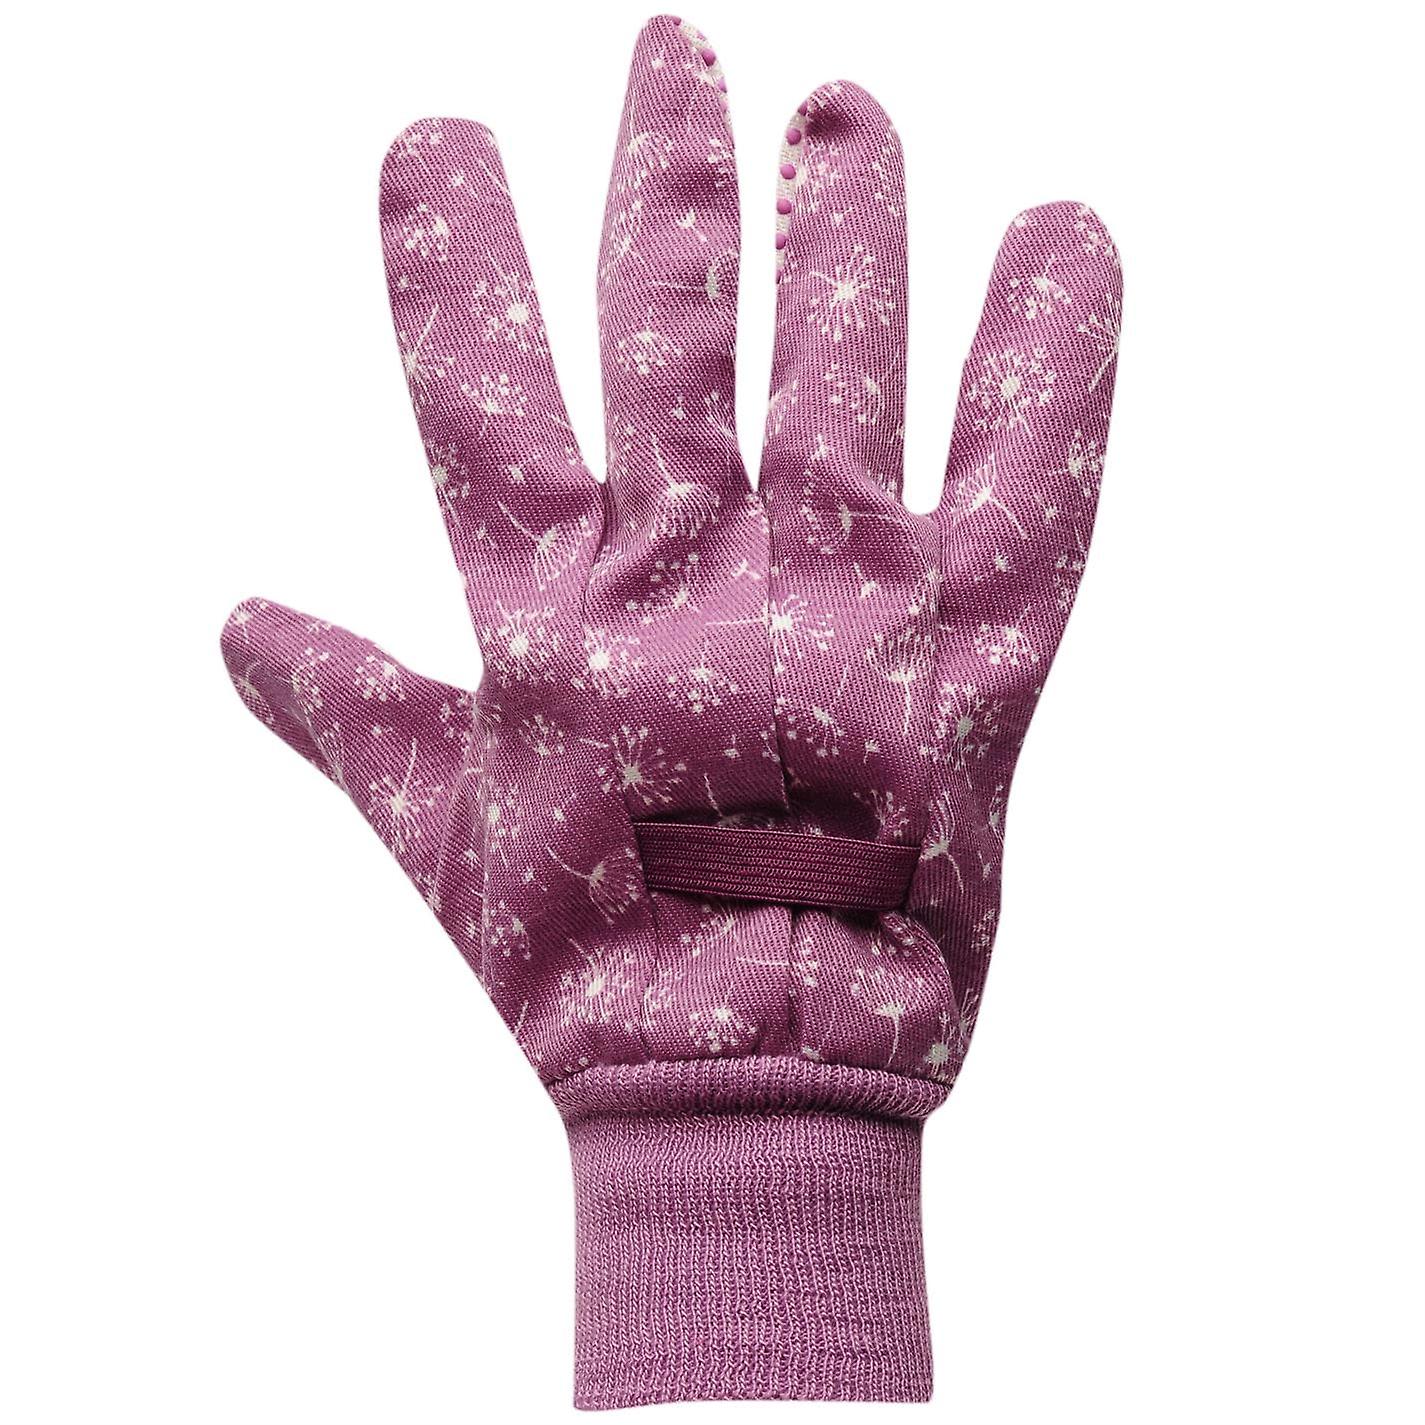 Briers Unisex Cotton Grip Gardening Gloves 3 Pack